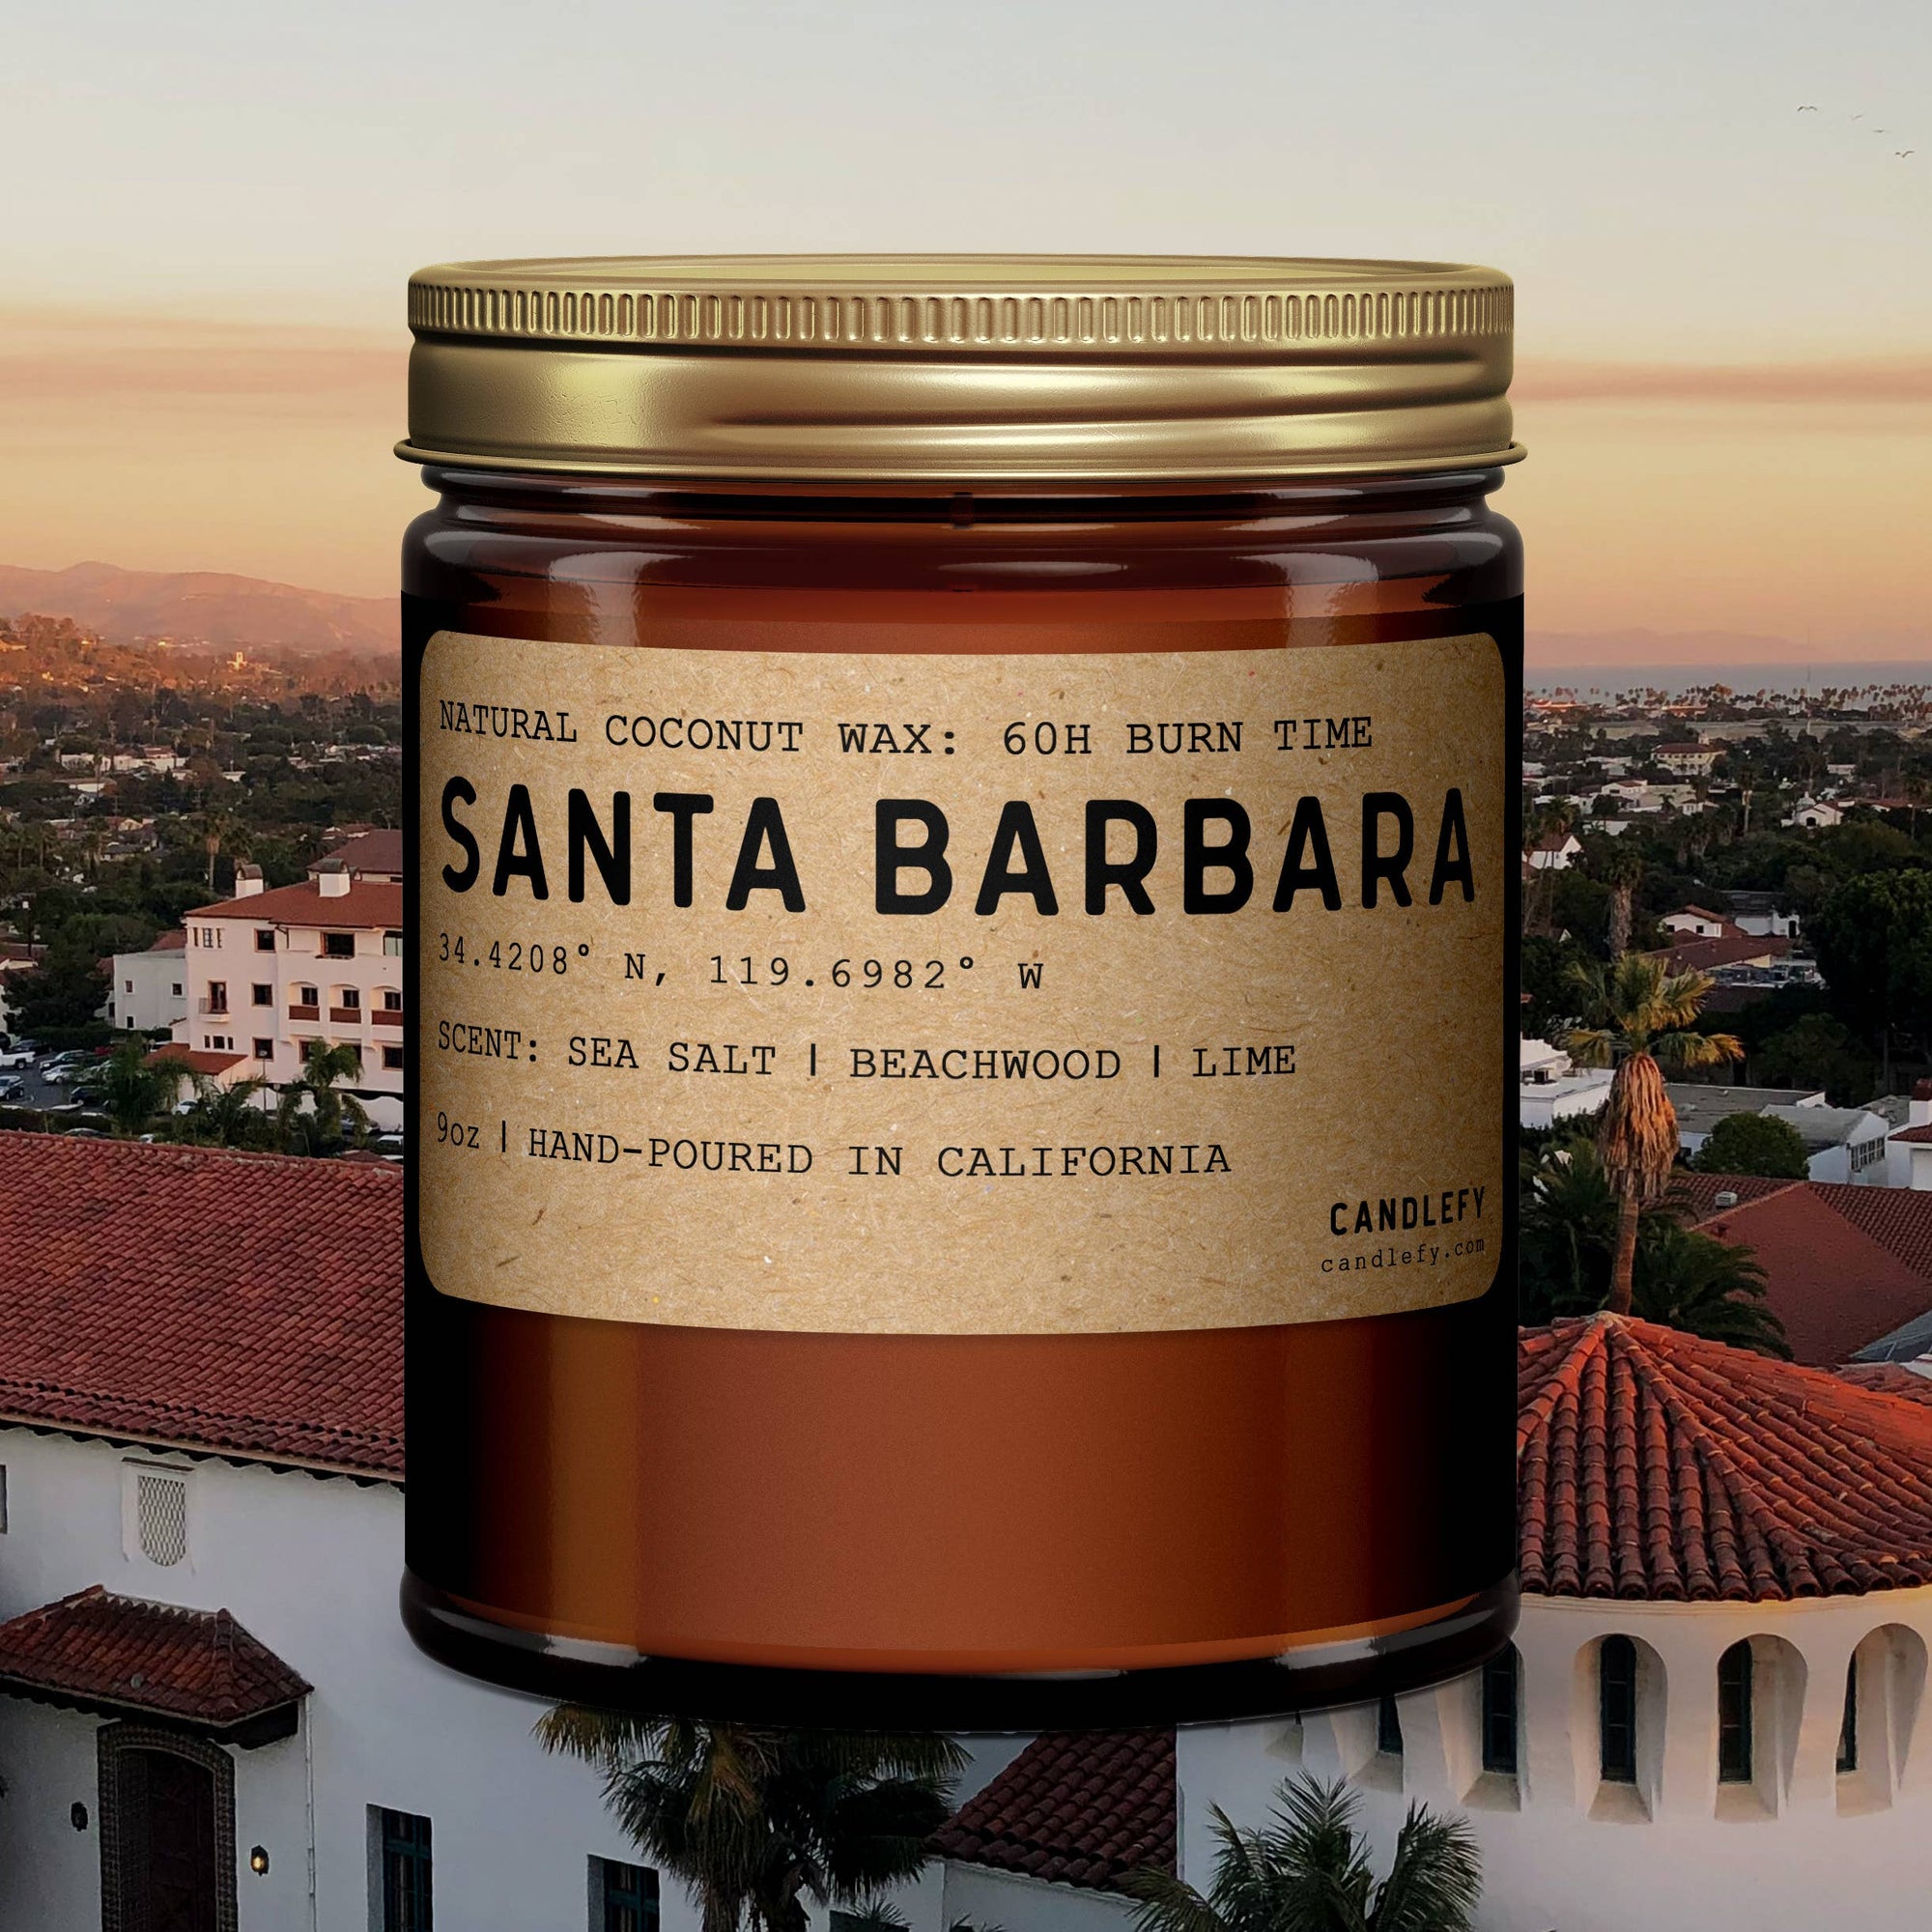 Santa Barbara, California Scented Candle in Amber Jar: 8oz